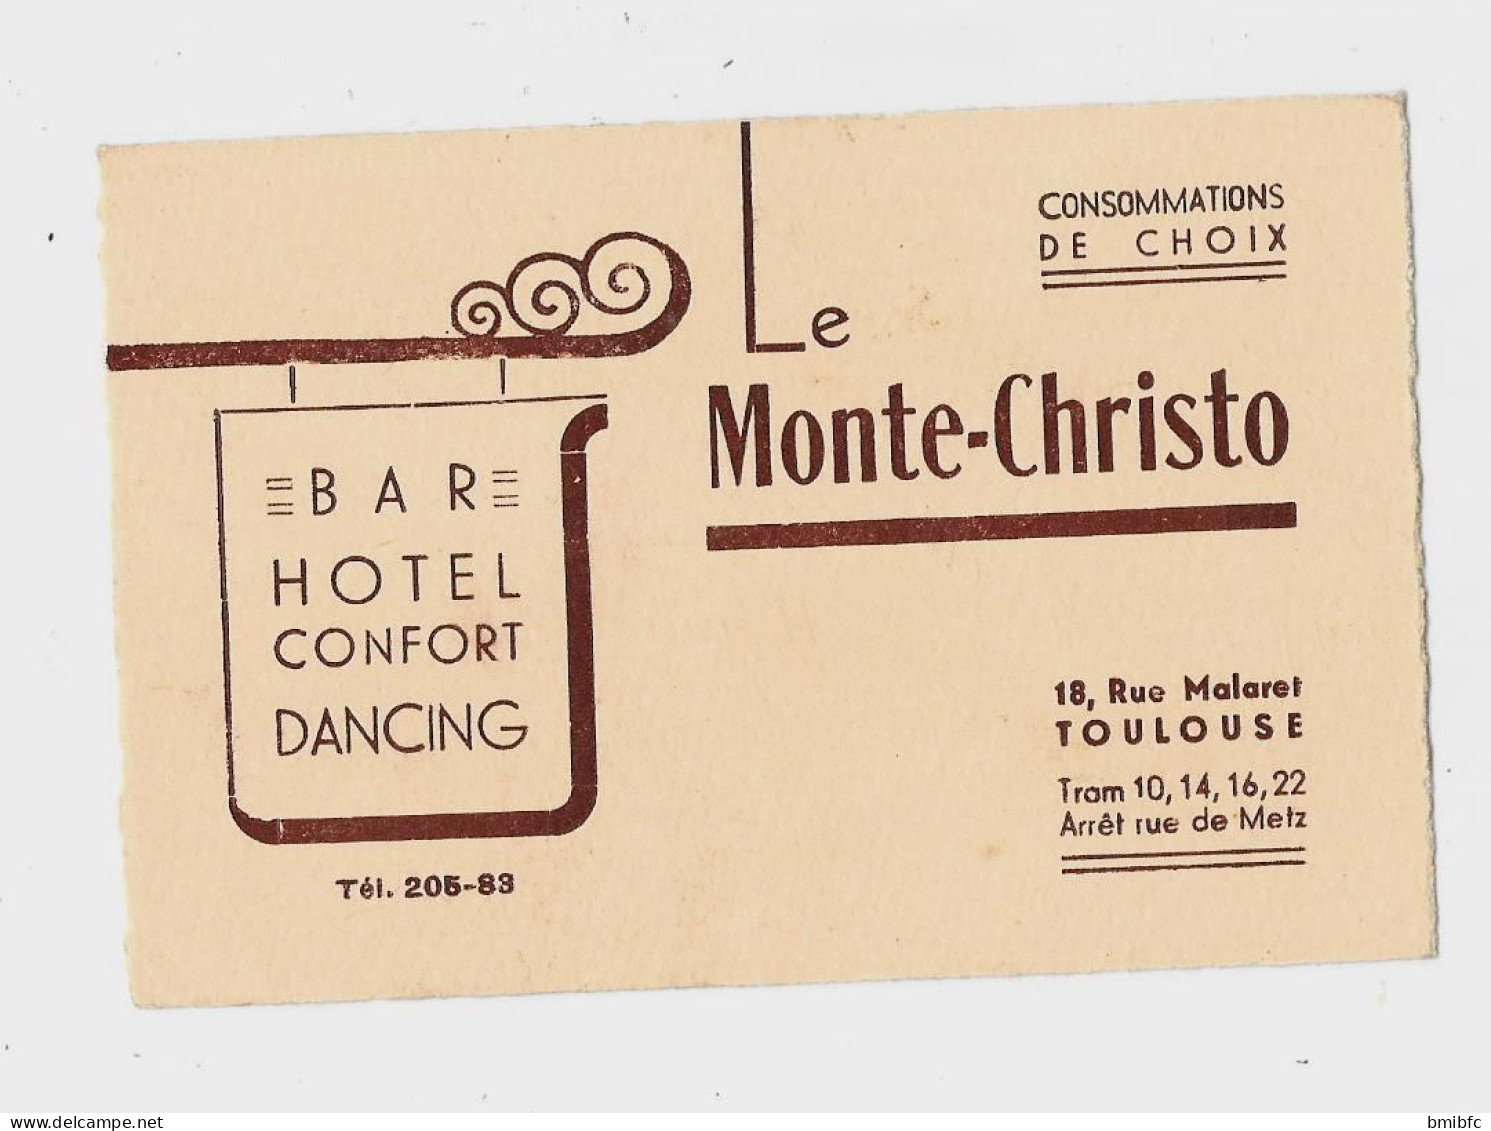 BAR HOTEL CONFORT DANCING Tél  205-83 Le Monte-Christo 18, Rue Malaret TOULOUSE Tram 10,14,16,22 - Cartes De Visite